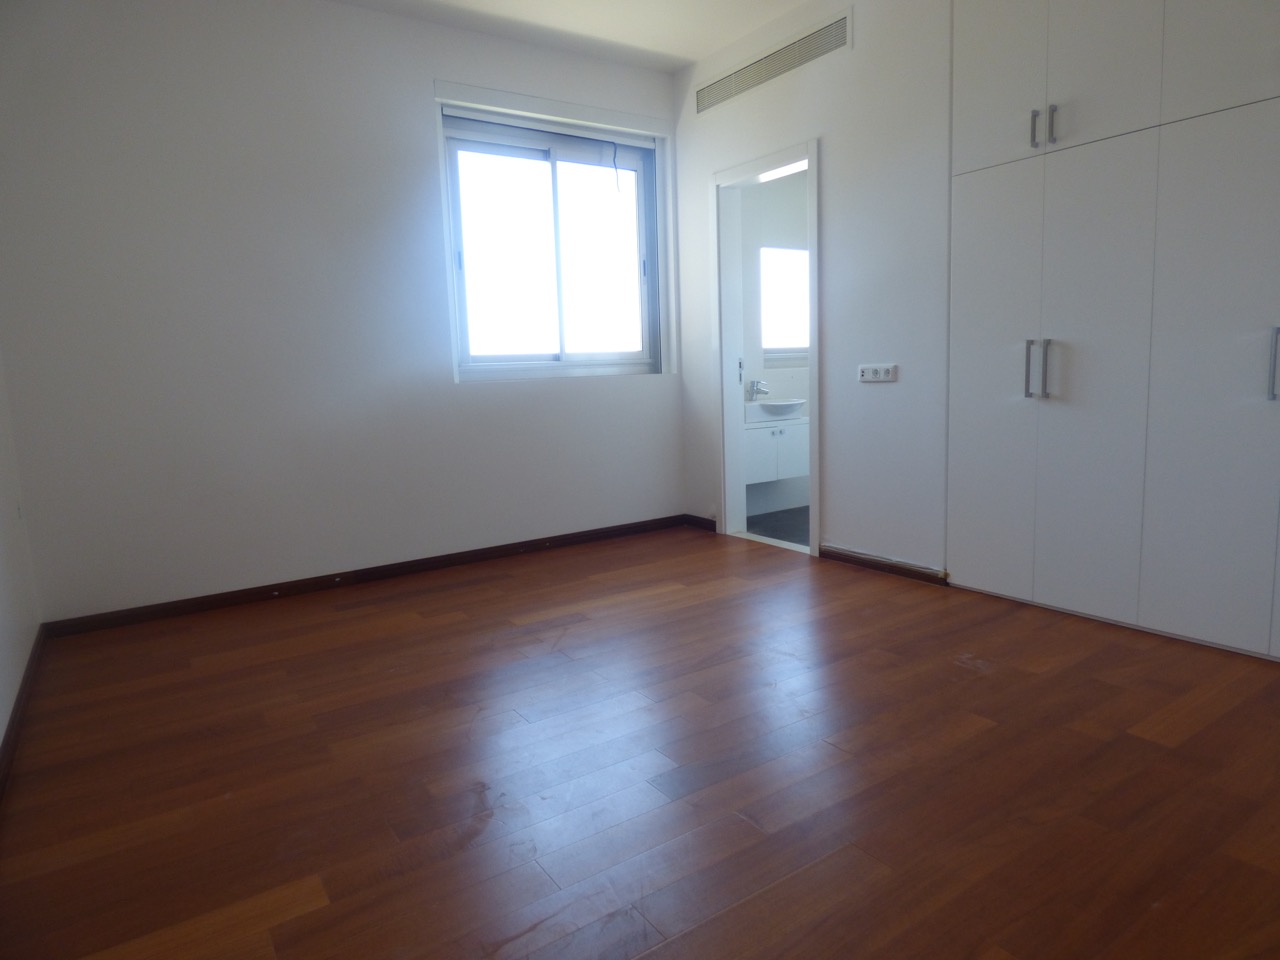 Apartment for rent in Manara